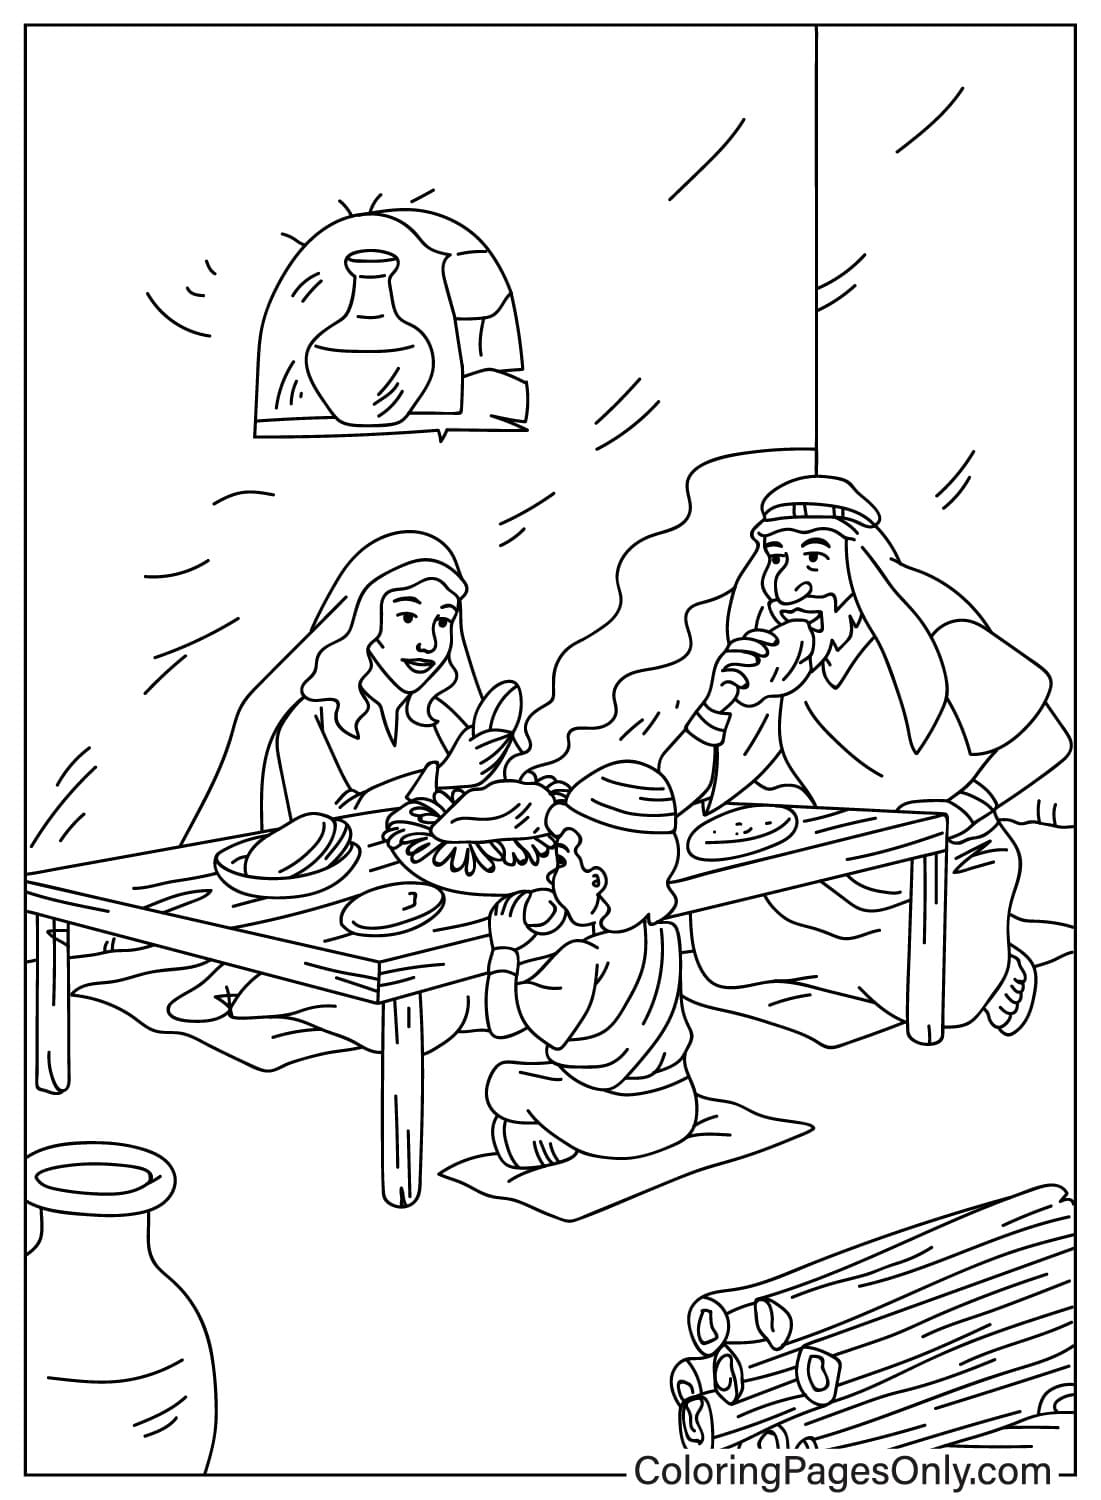 Página para colorir de Páscoa em família comendo Páscoa